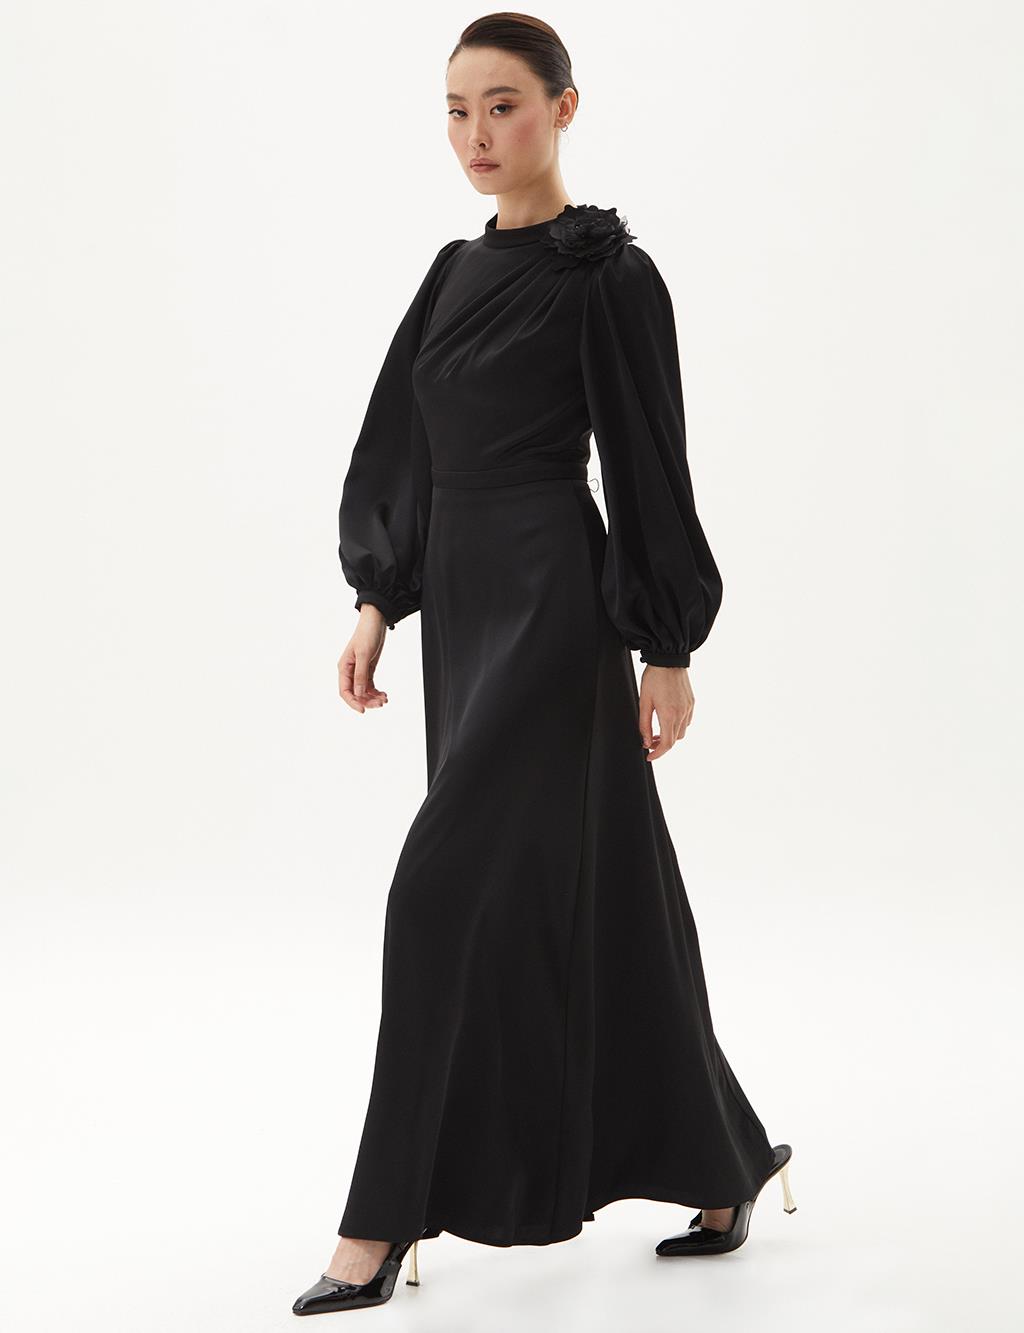 Rose Motif Satin Dress Black